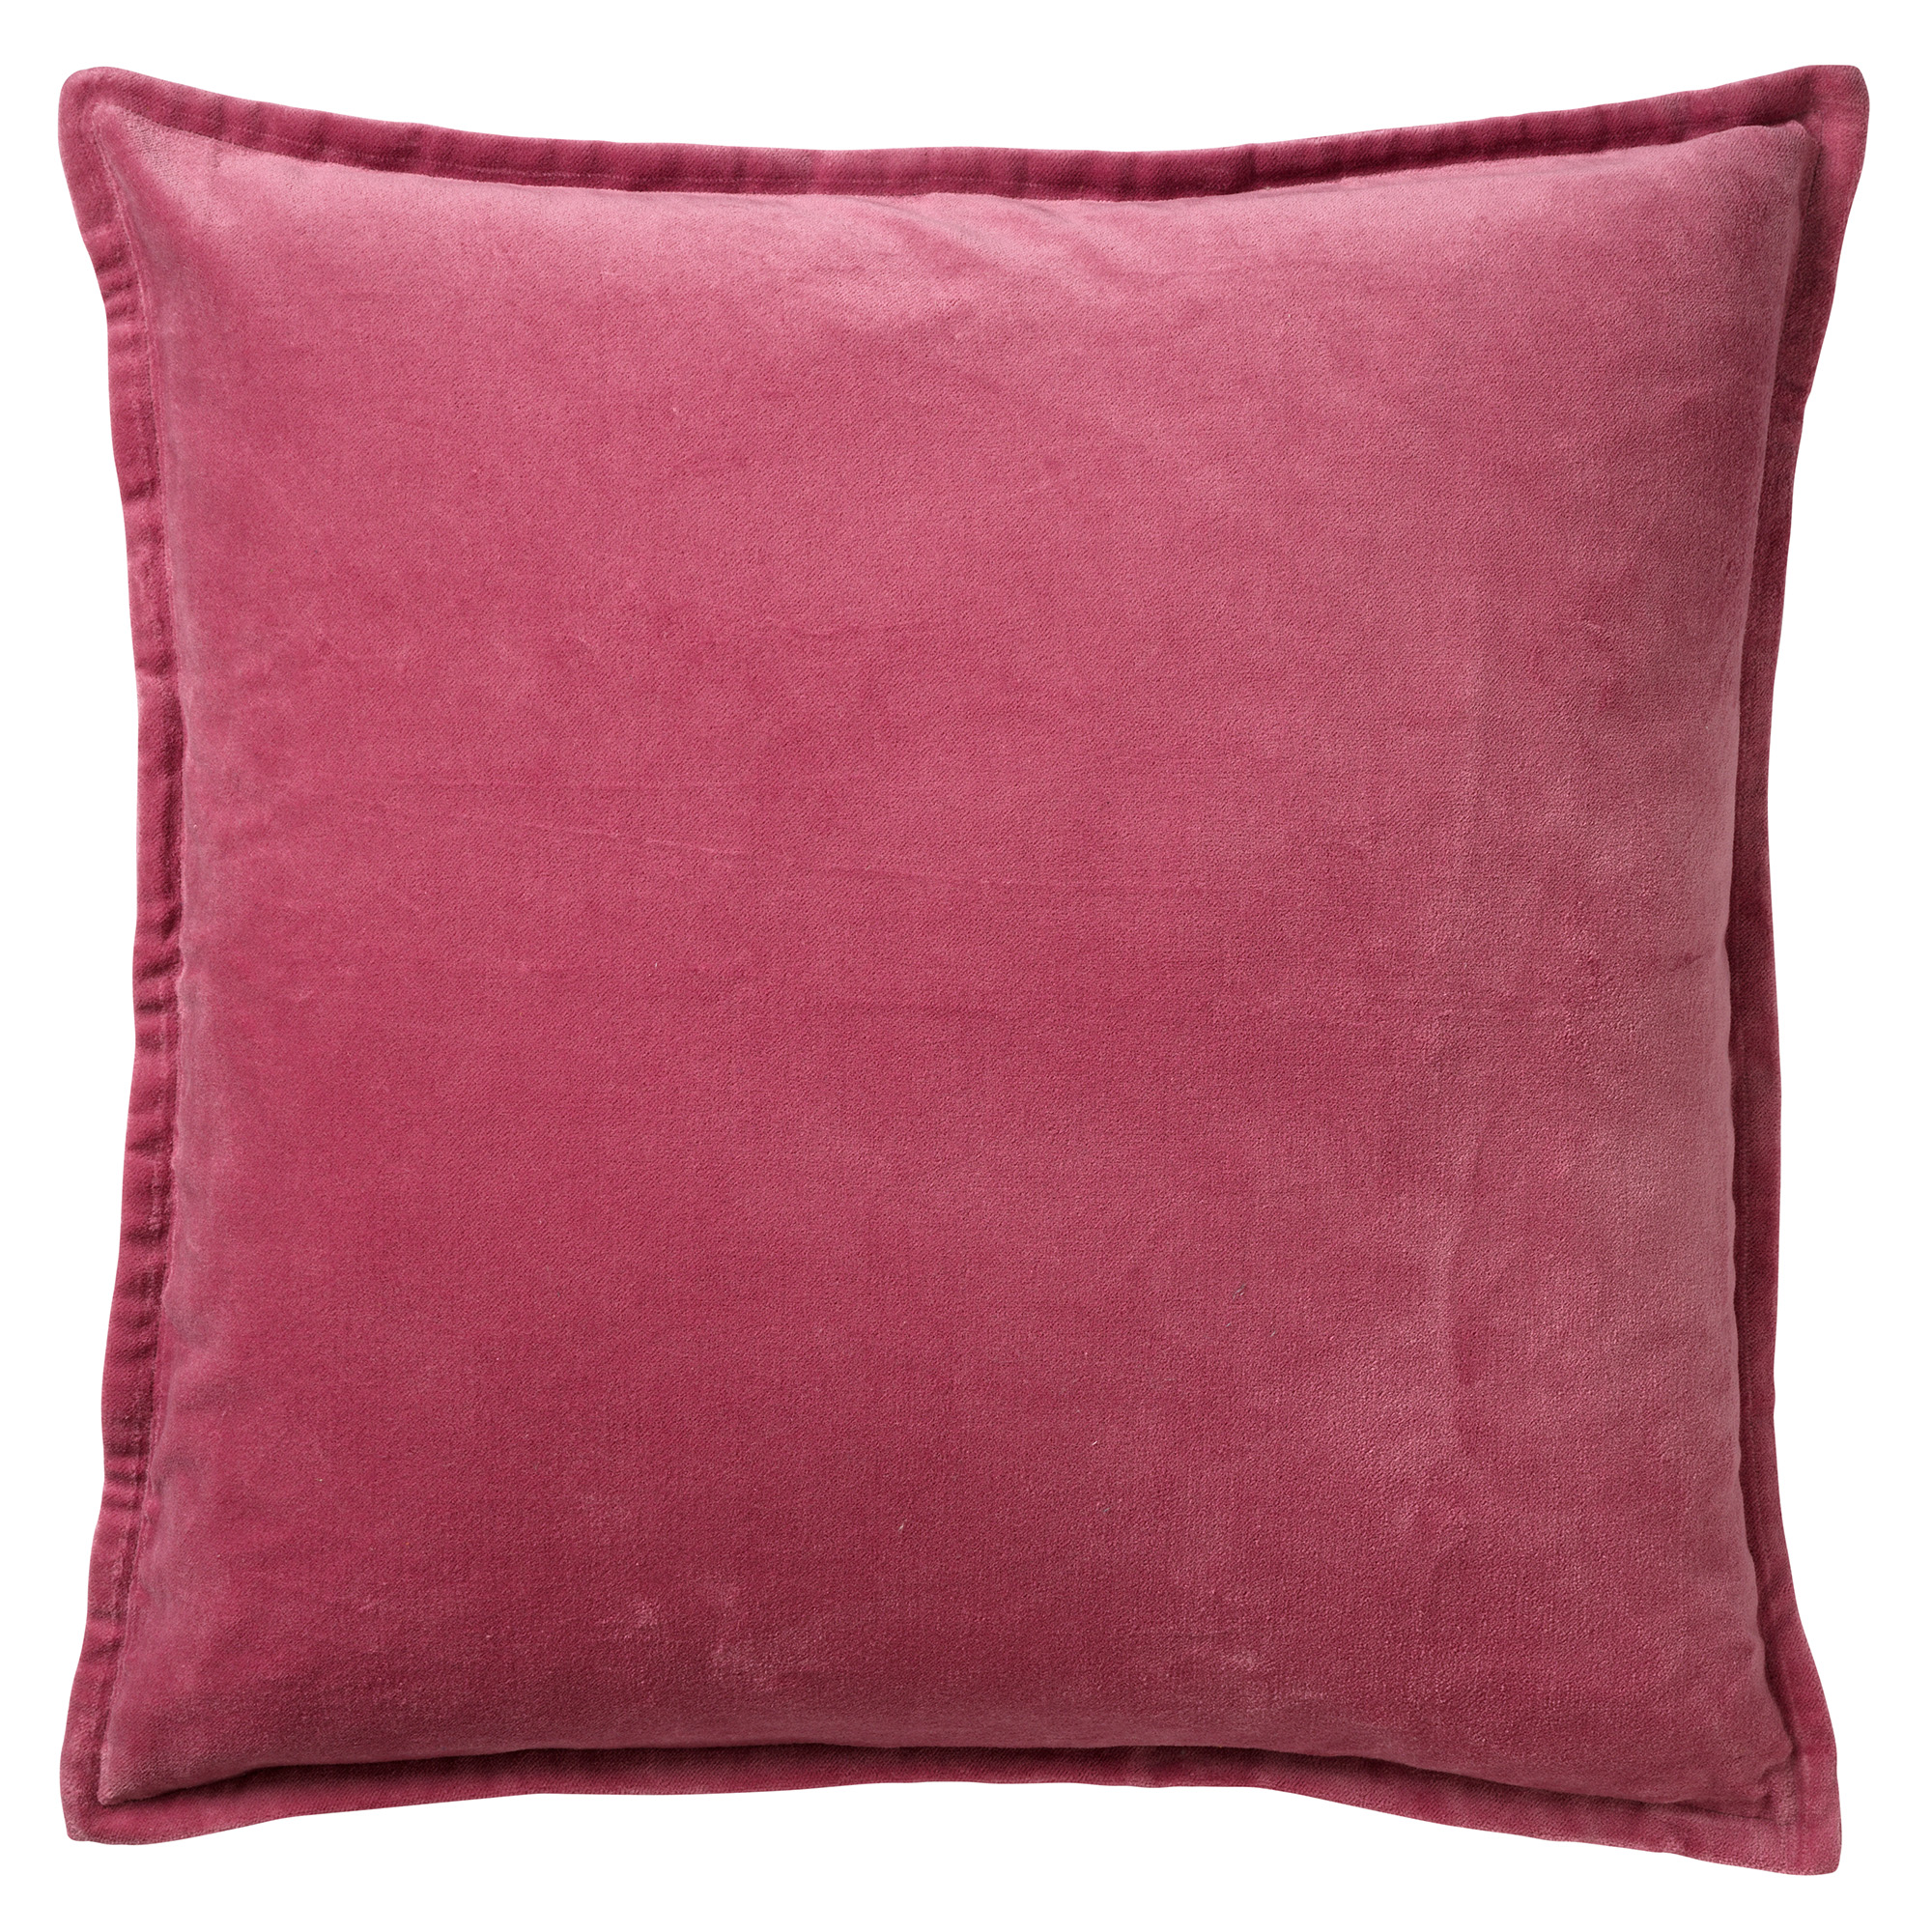 CAITH - Sierkussen 50x50 cm - 100% katoen - velvet - lekker zacht - Heather Rose - roze